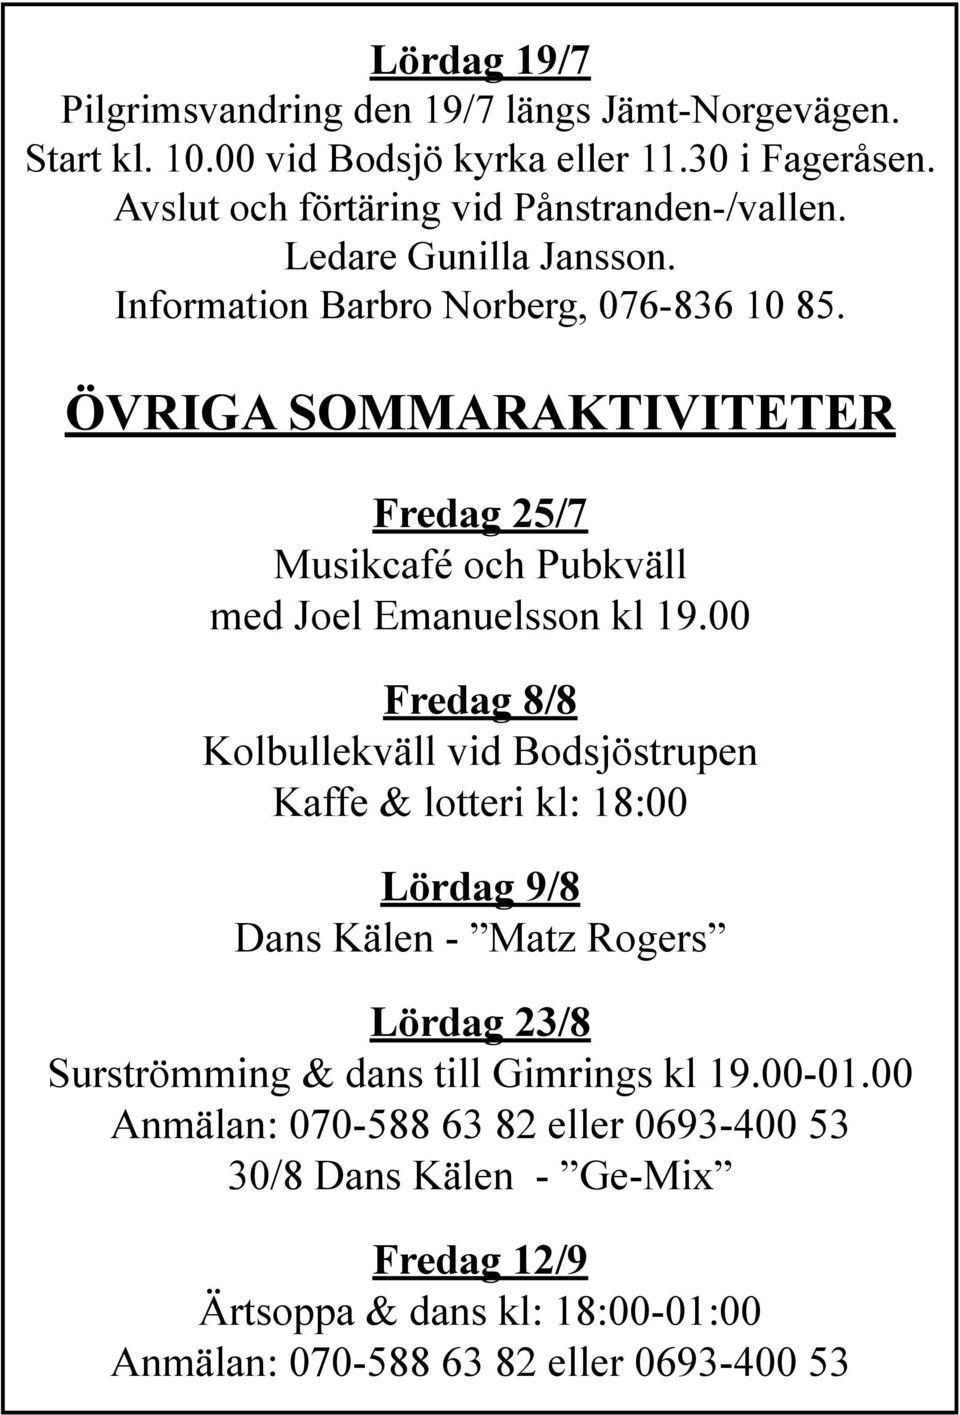 ÖVRIGA SOMMARAKTIVITETER Fredag 25/7 Musikcafé och Pubkväll med Joel Emanuelsson kl 19.